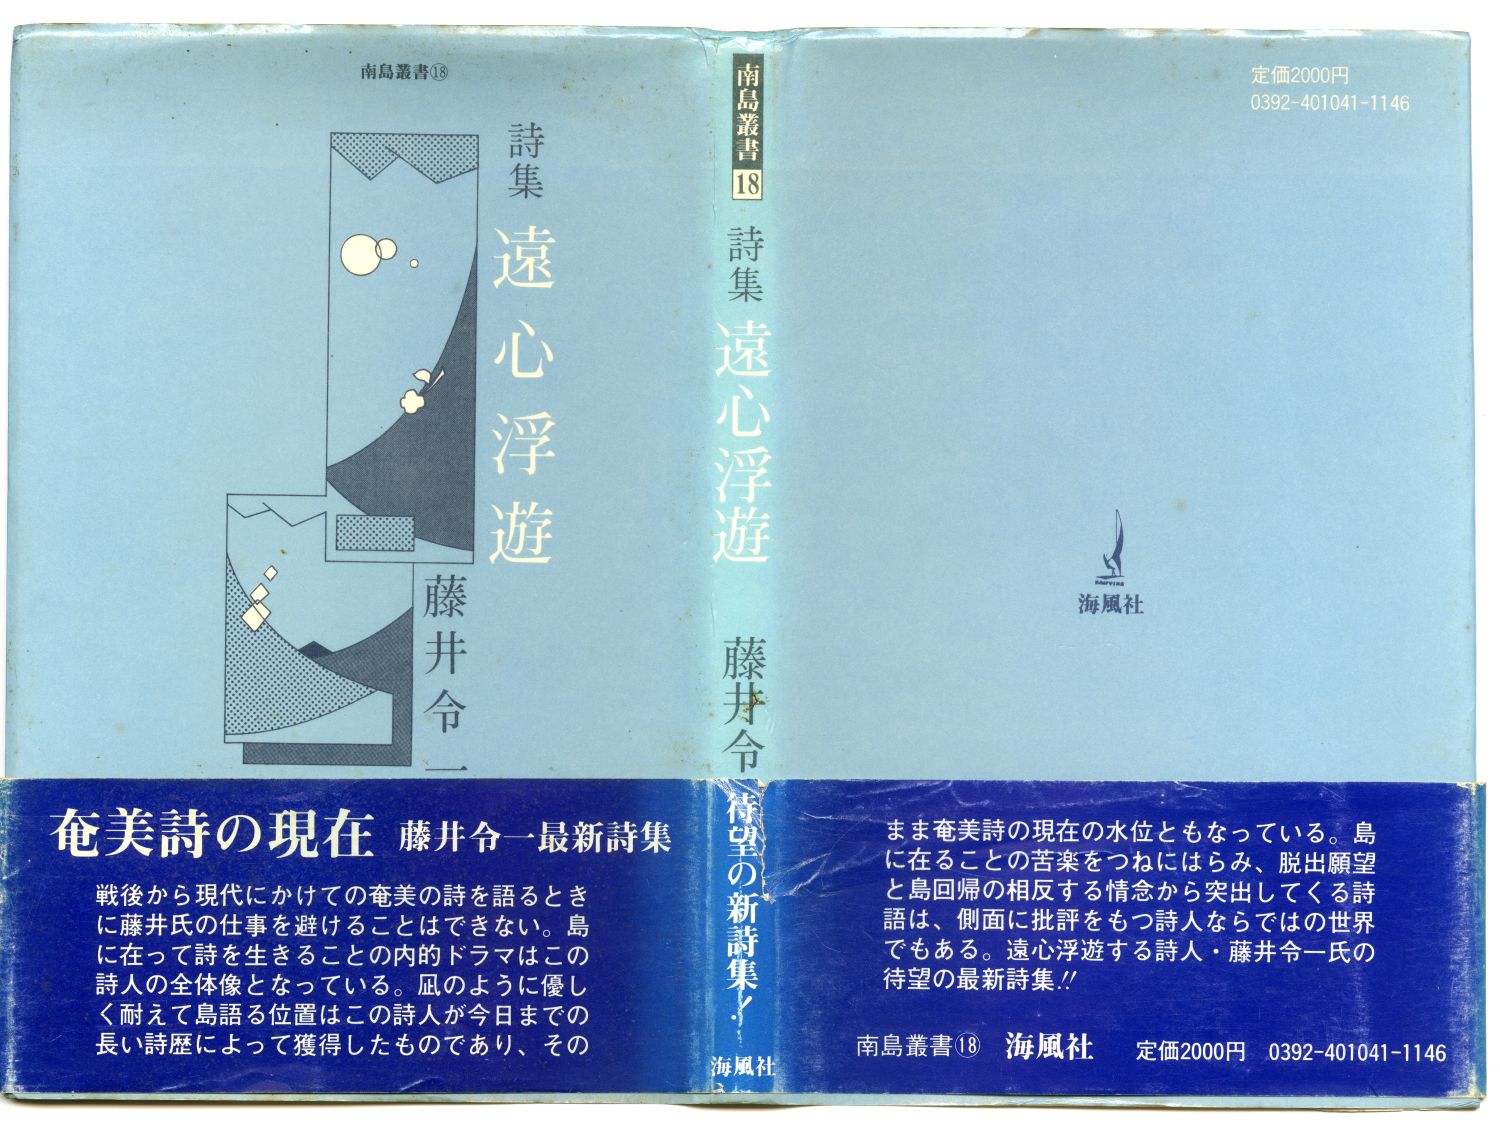 藤井令一『遠心浮遊』（1984年、海風社）カヴァー01